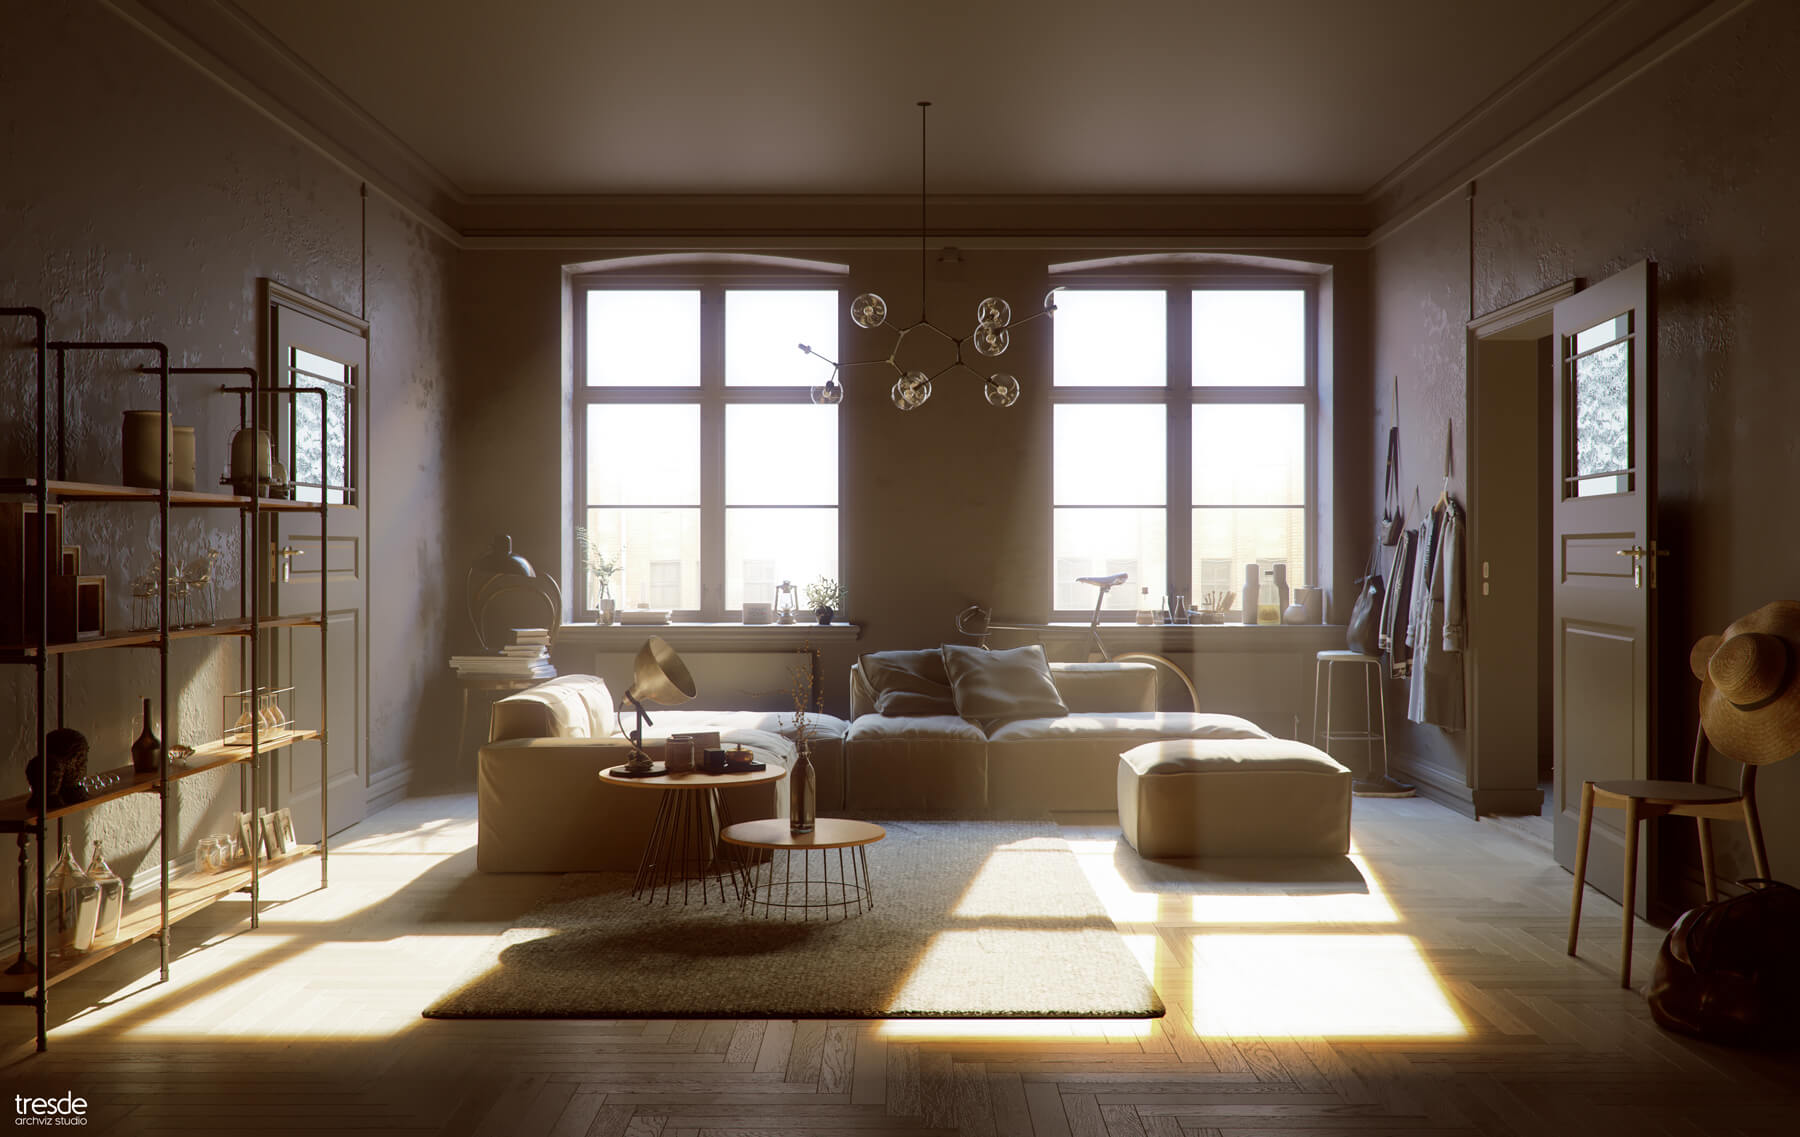 Wohnzimmer mit warmem Sonnenlicht das durch die Fenster fällt